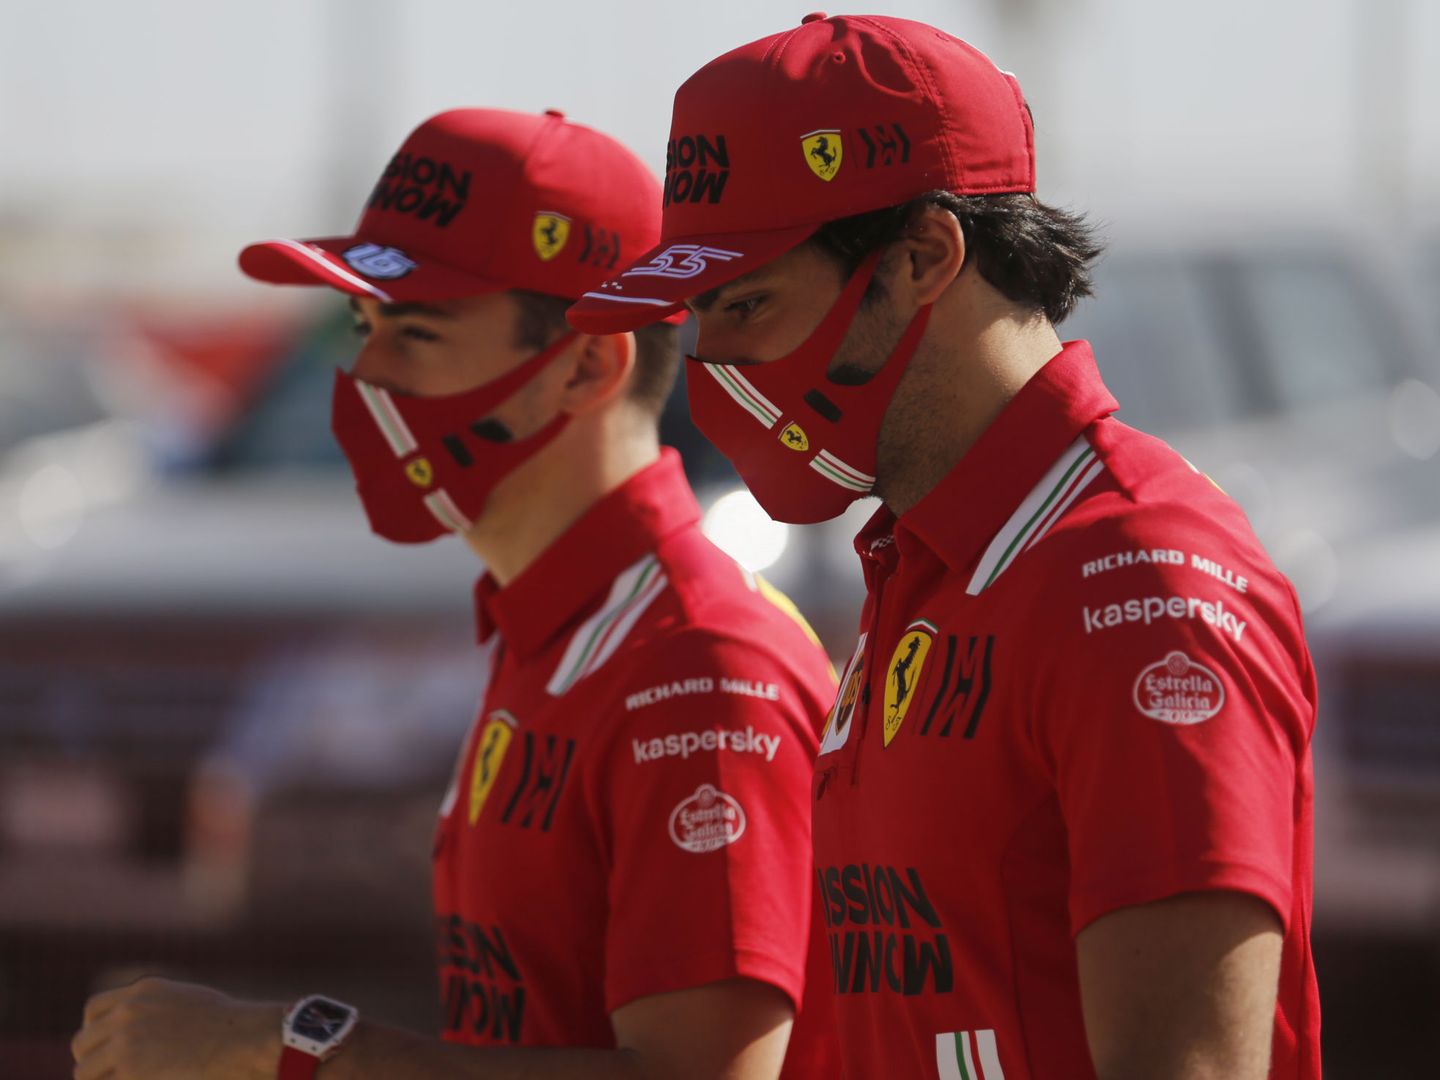 A De la Rosa le gusta mucho la pareja de Sainz y Leclerc, y ve al español confiando y tranquilo en sus primeros pasos con Ferrari